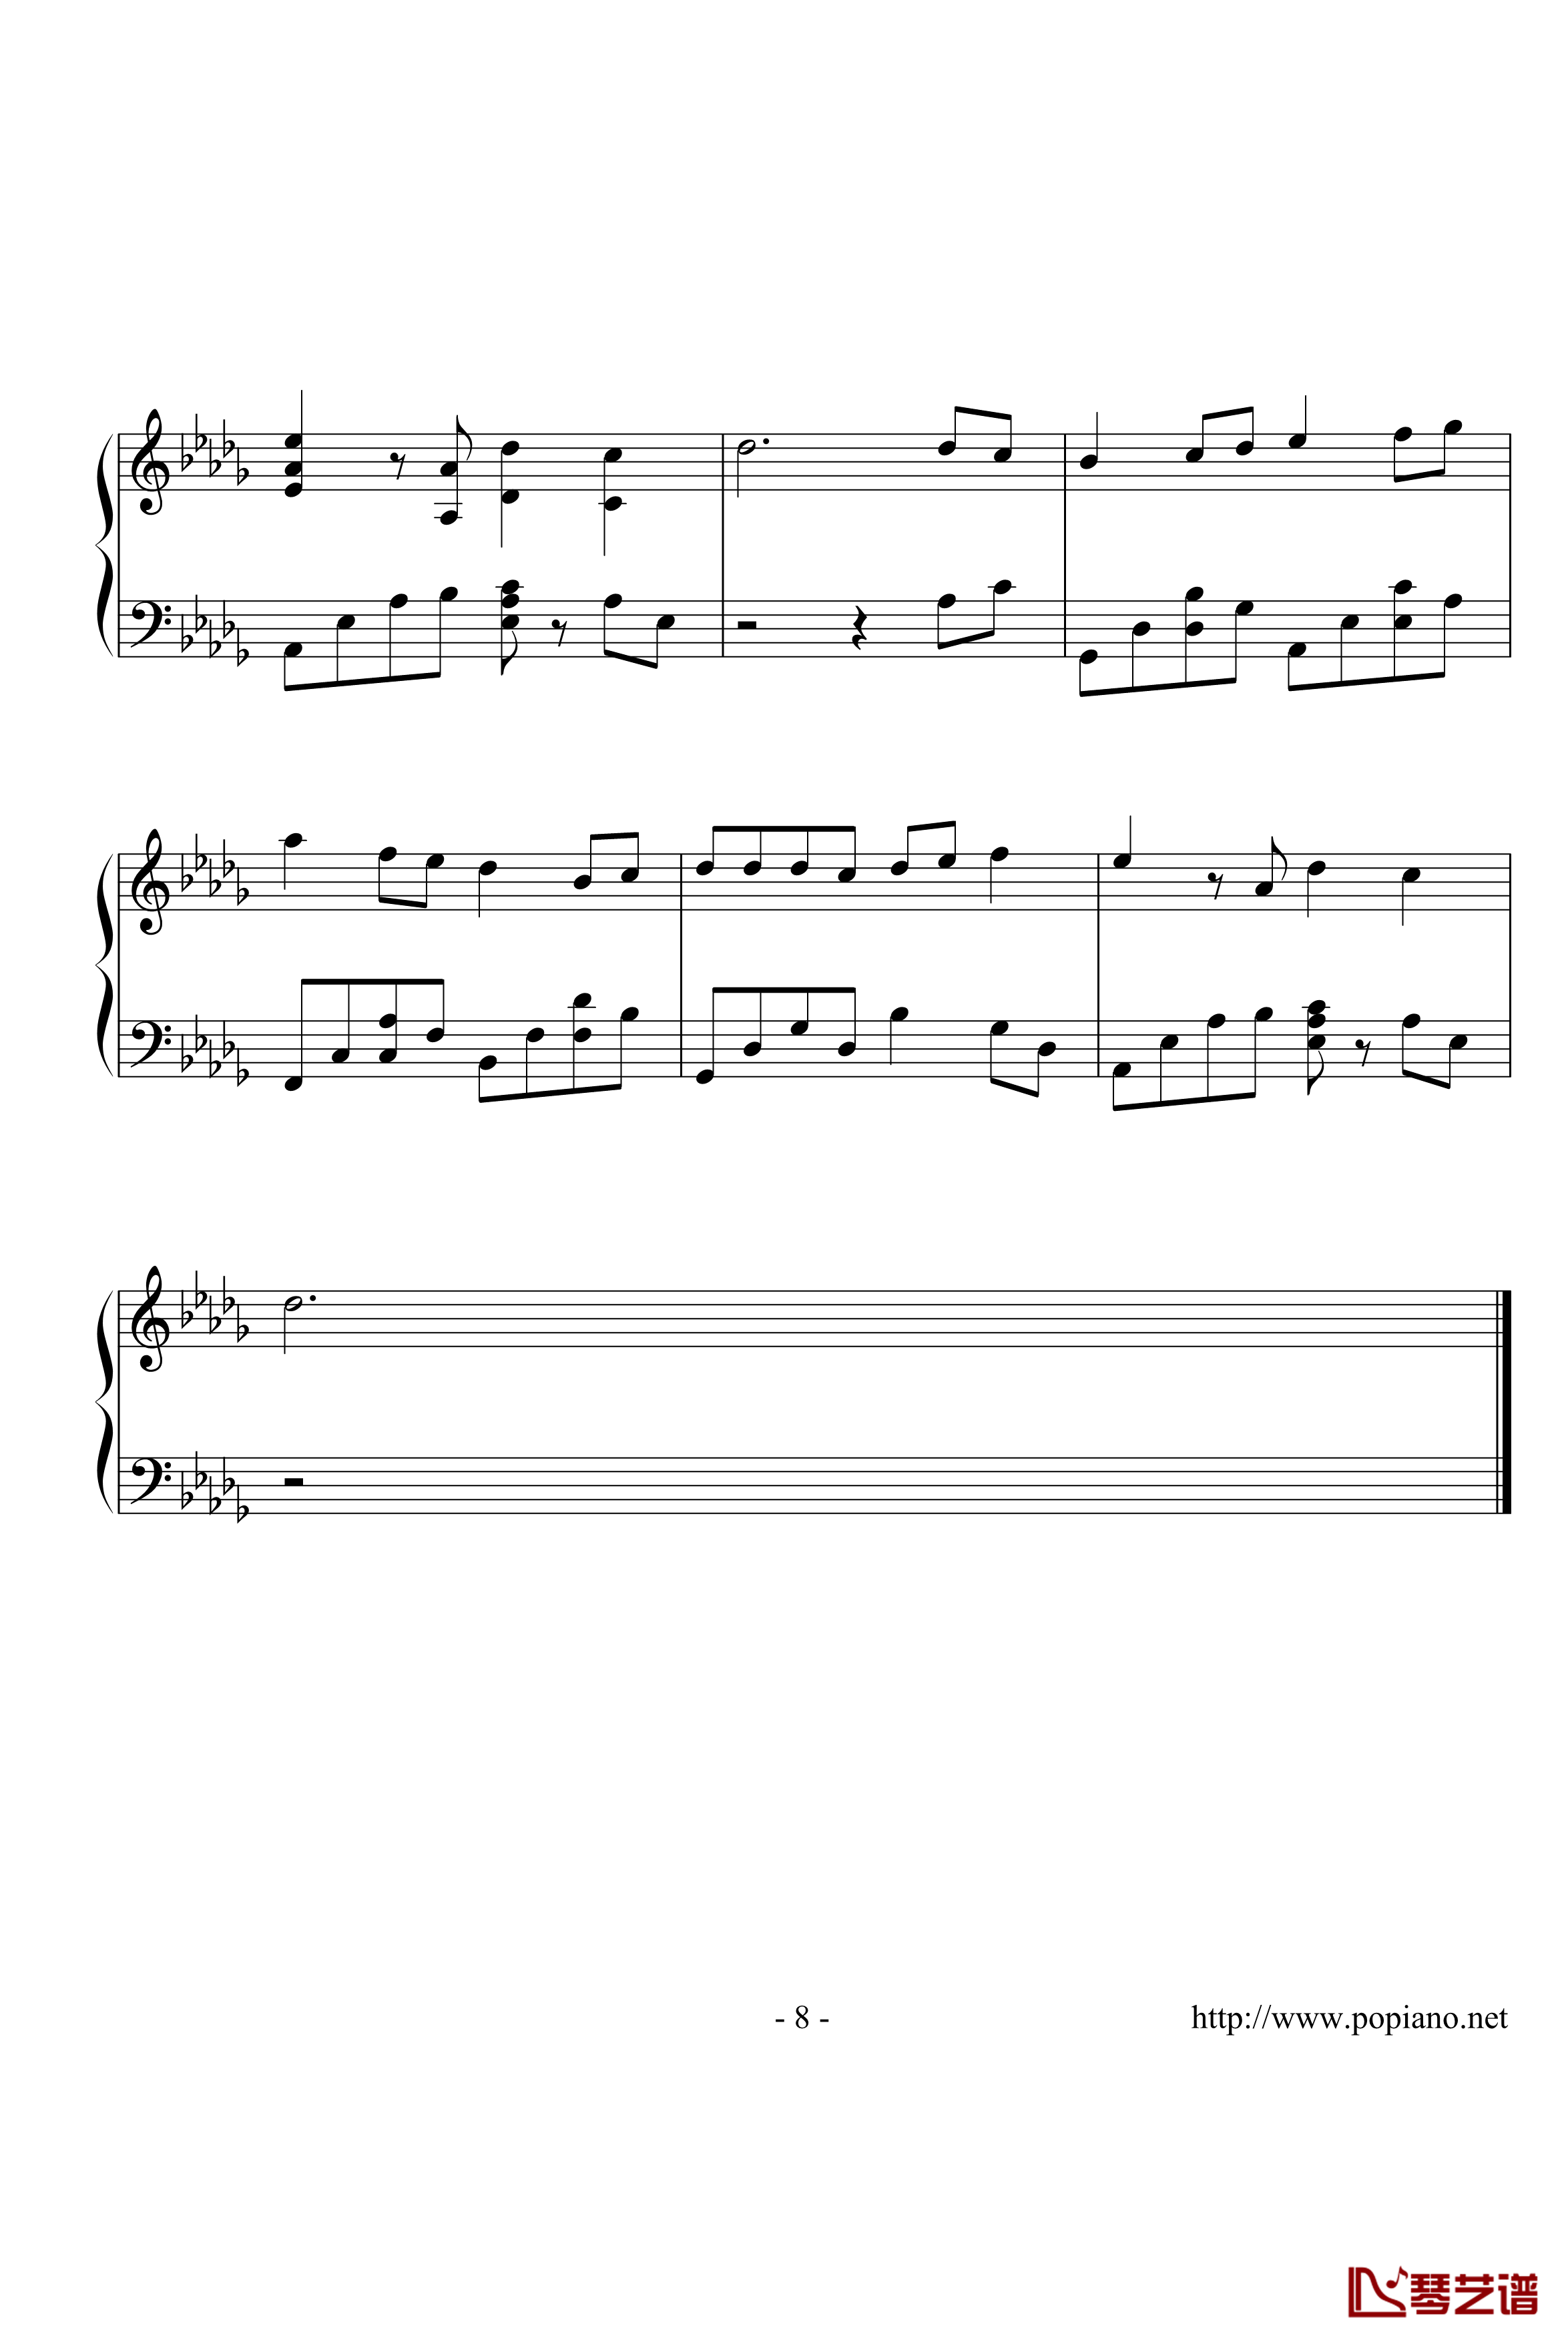 棉花糖钢琴谱-演奏版-至上励合8